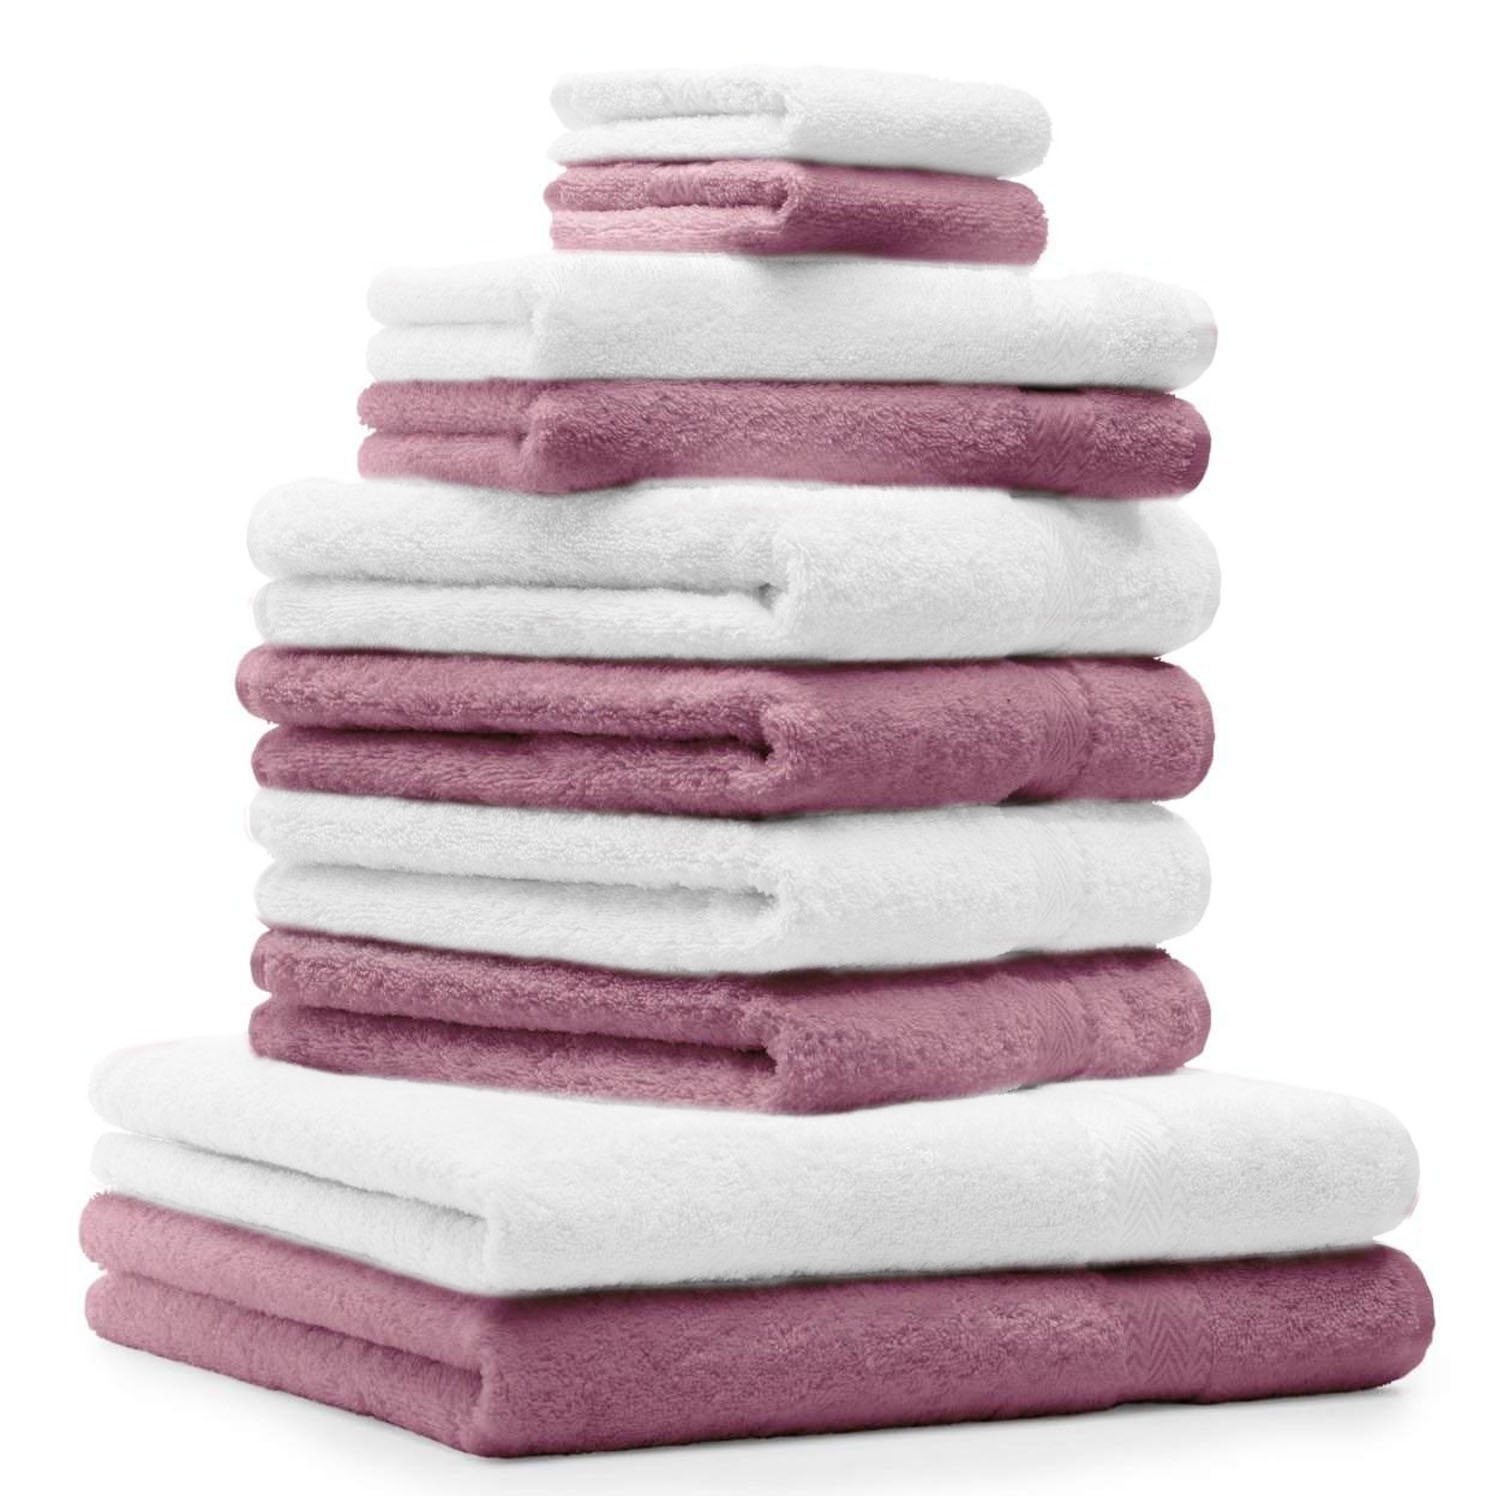 Betz Handtuch Set 10-TLG. Handtuch-Set Classic Farbe altrosa und weiß, 100% Baumwolle